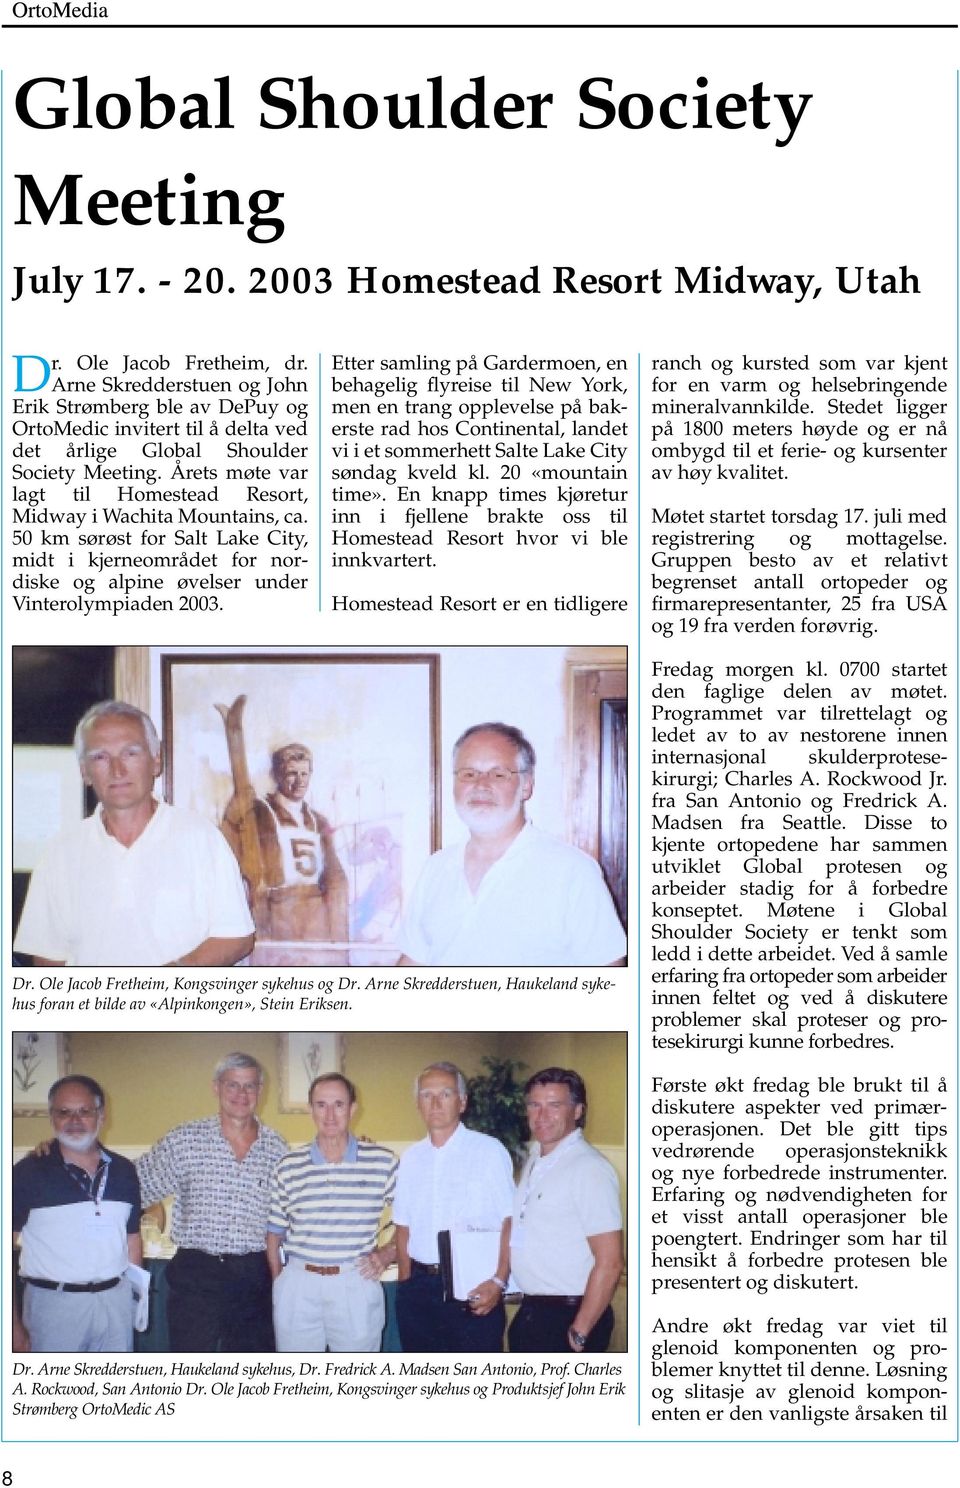 Årets møte var lagt til Homestead Resort, Midway i Wachita Mountains, ca. 50 km sørøst for Salt Lake City, midt i kjerneområdet for nordiske og alpine øvelser under Vinterolympiaden 2003.